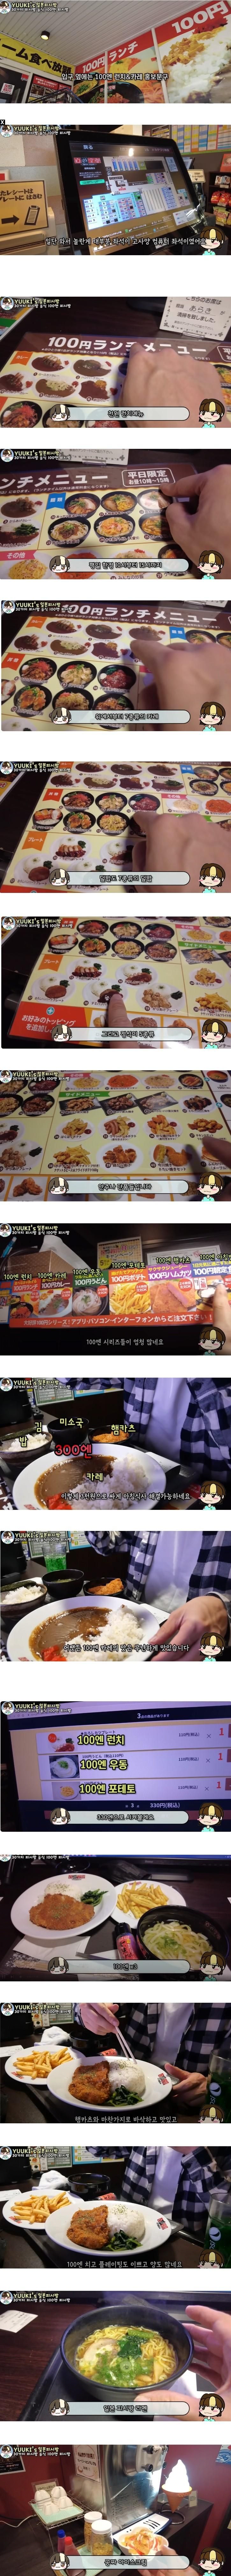 음식메뉴를 단 돈 900원에 파는 일본 PC방